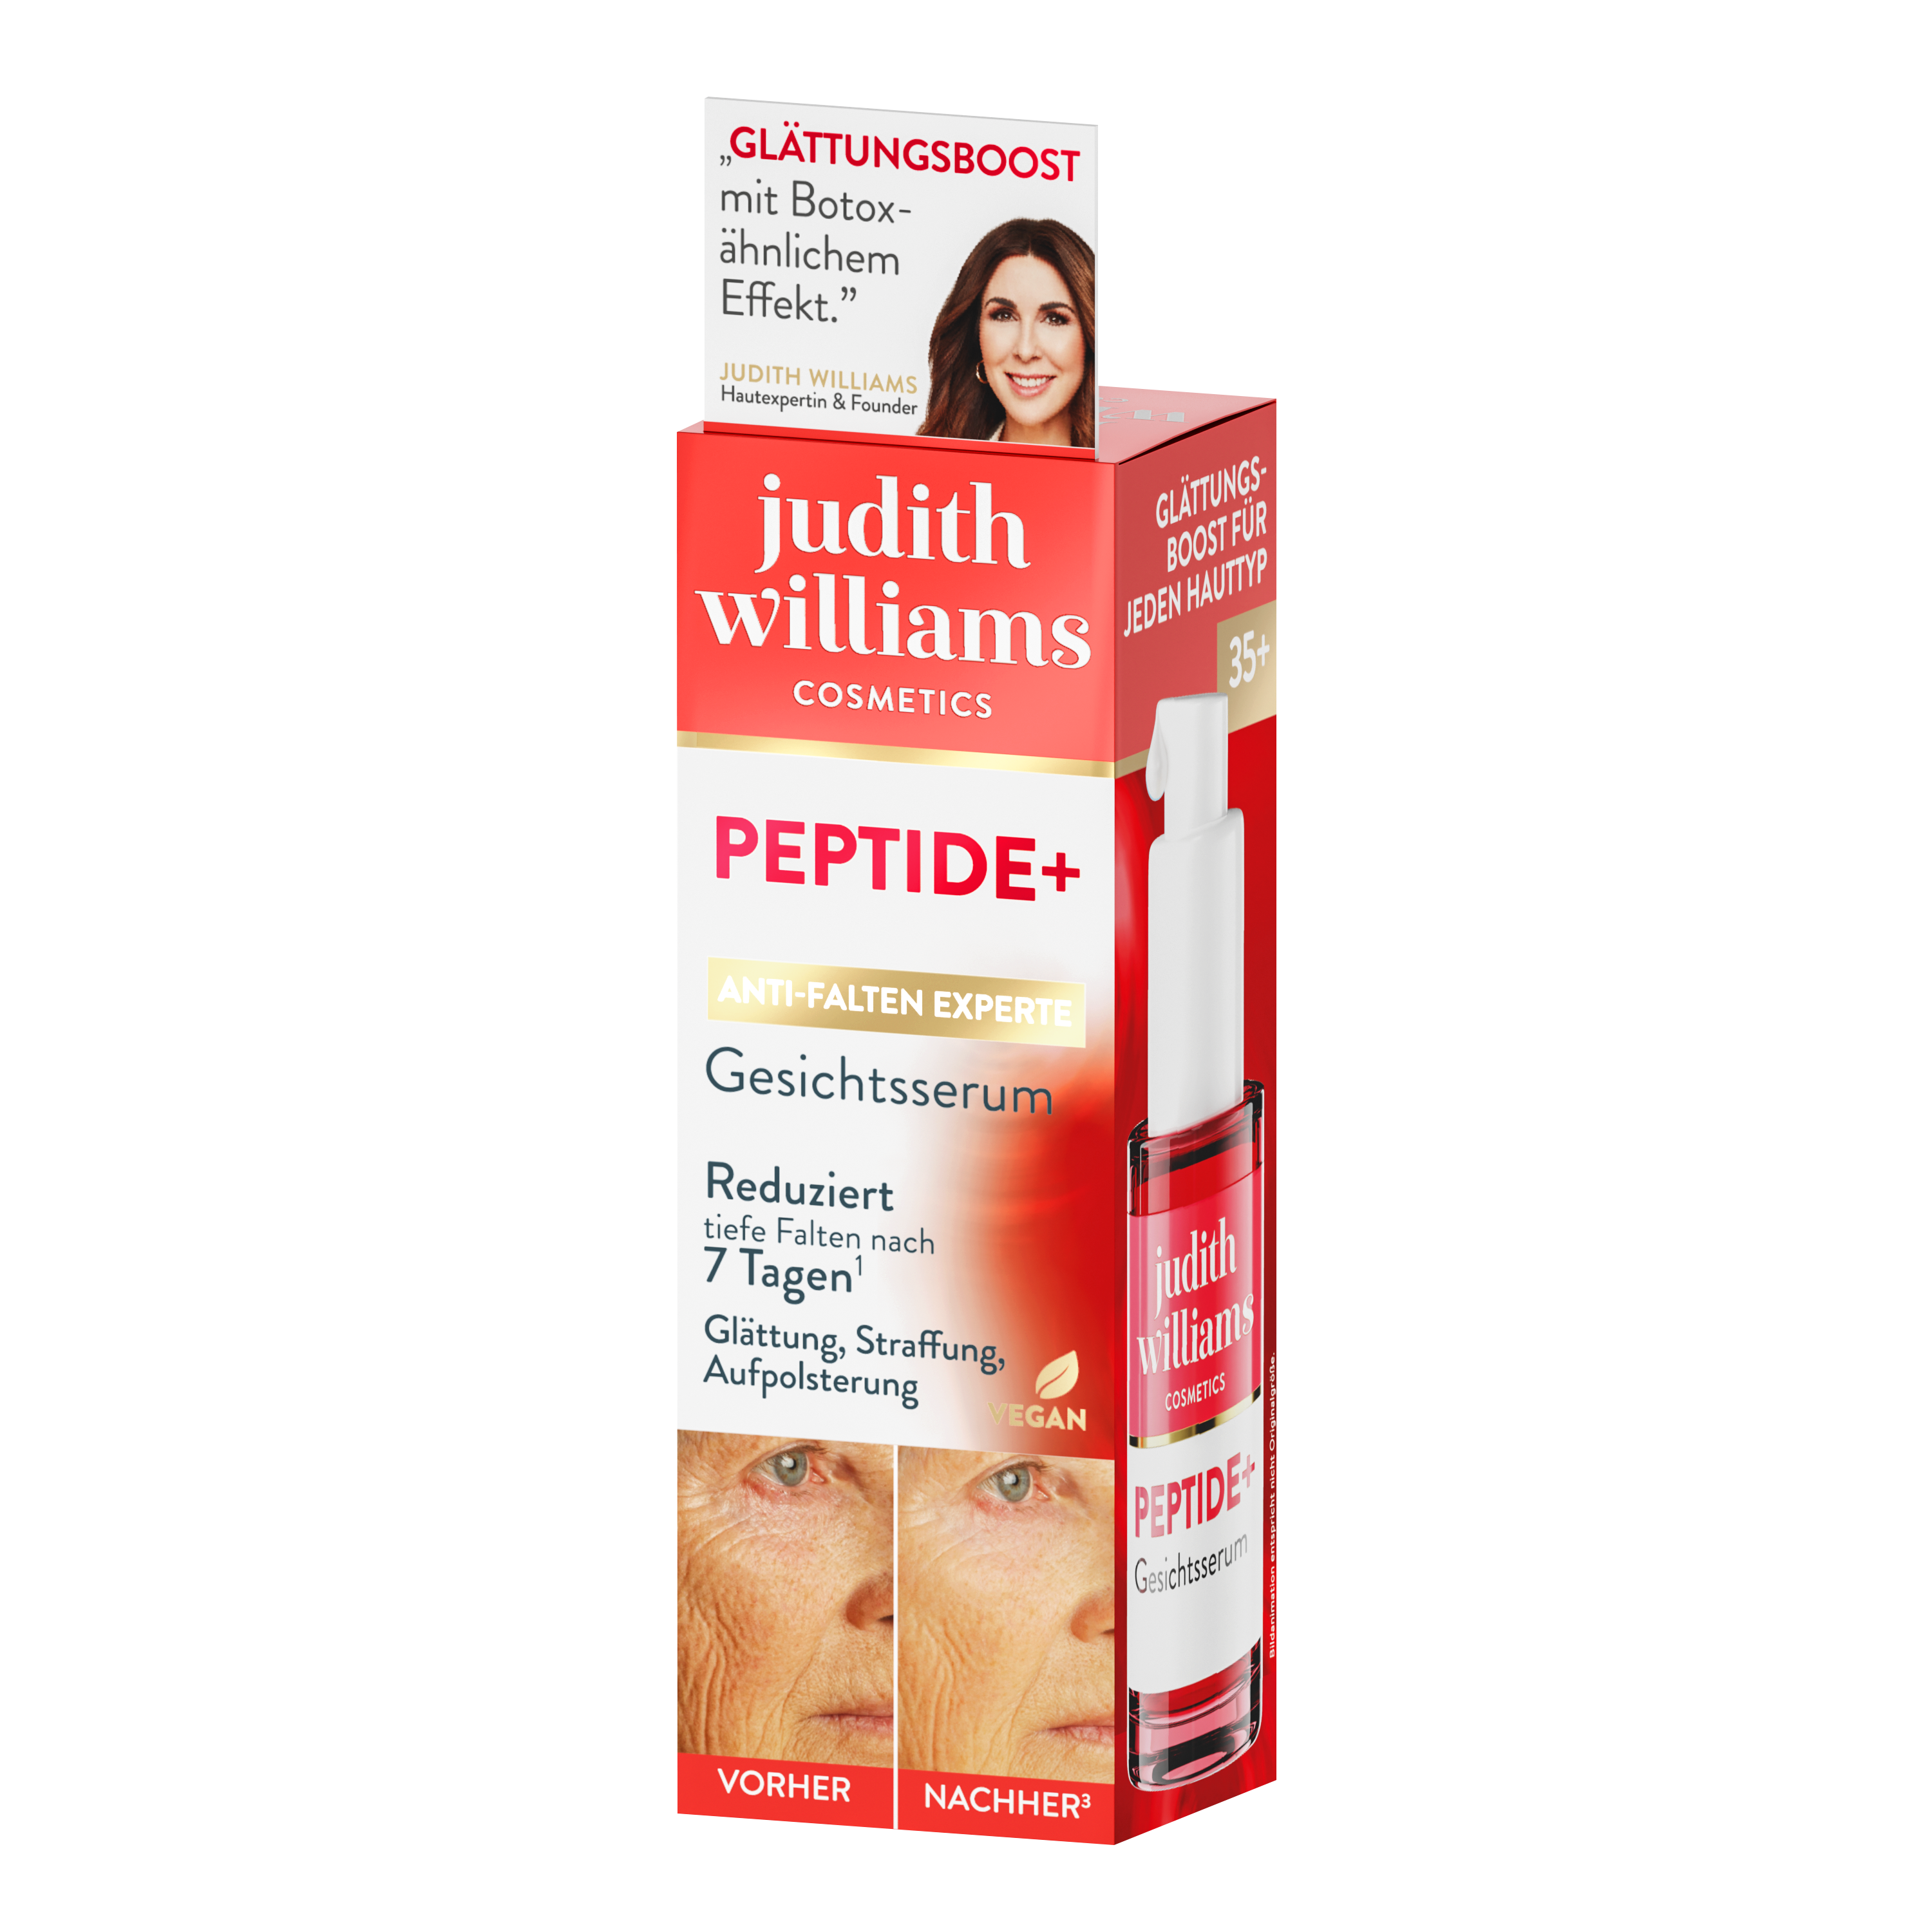 Gesichtsserum | Peptide+ | Gesichtsserum | Judith Williams